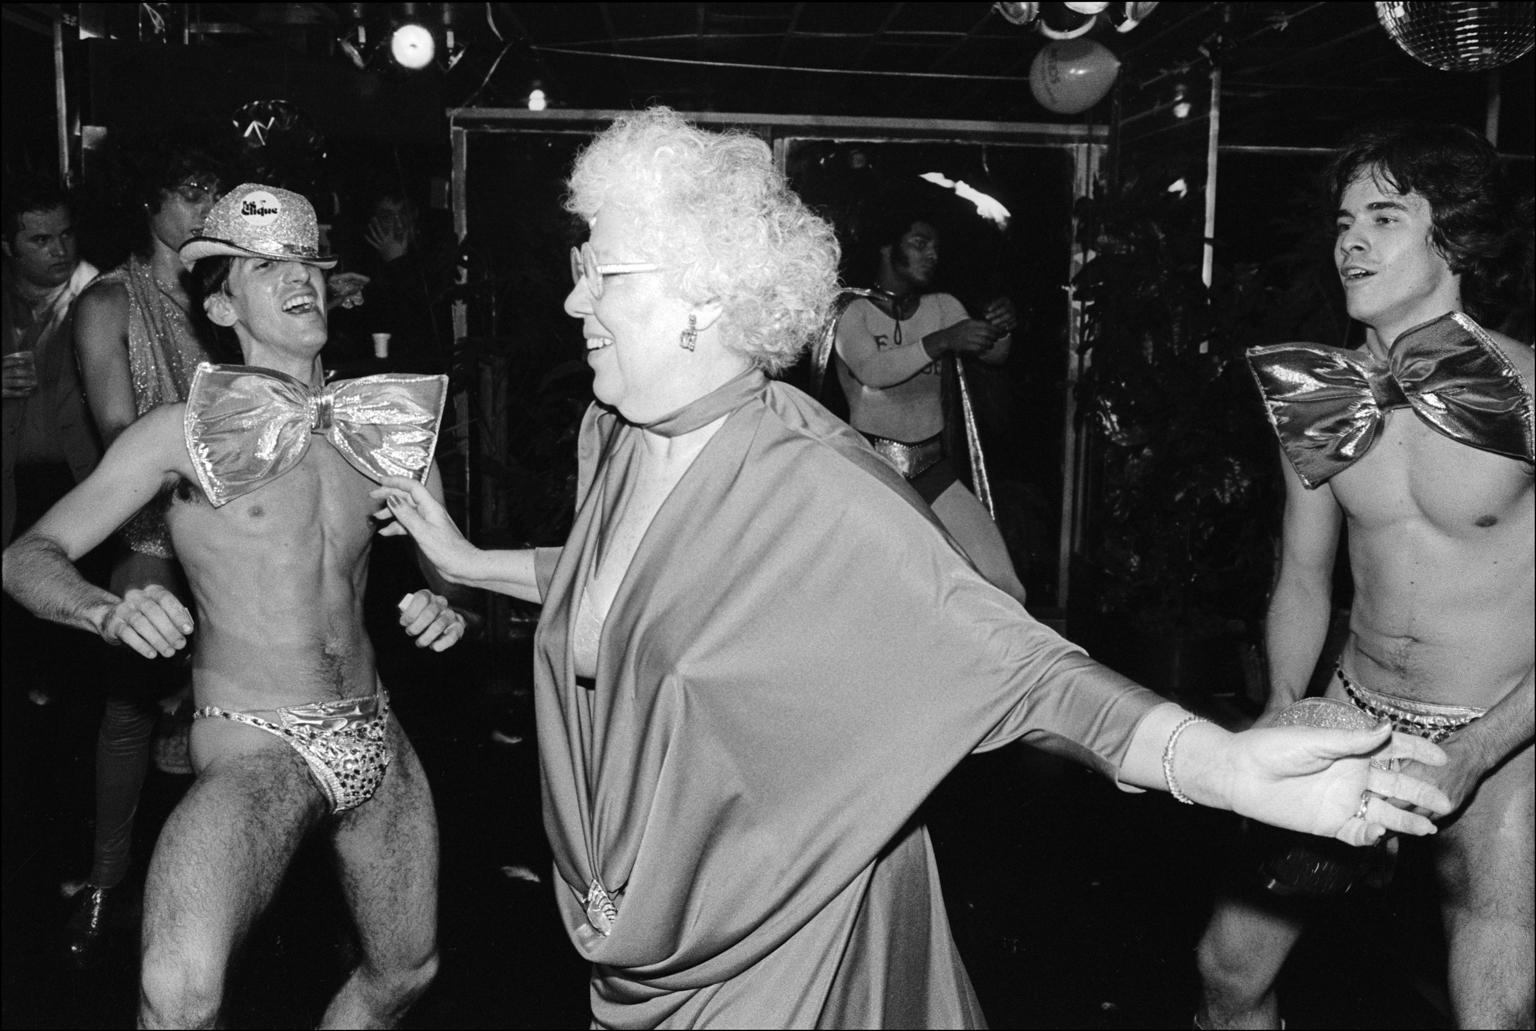 Allan Tannenbaum Nude Photograph - Plato's Retreat Randy Granny Dancing - Archival Fine Art Black and White Print